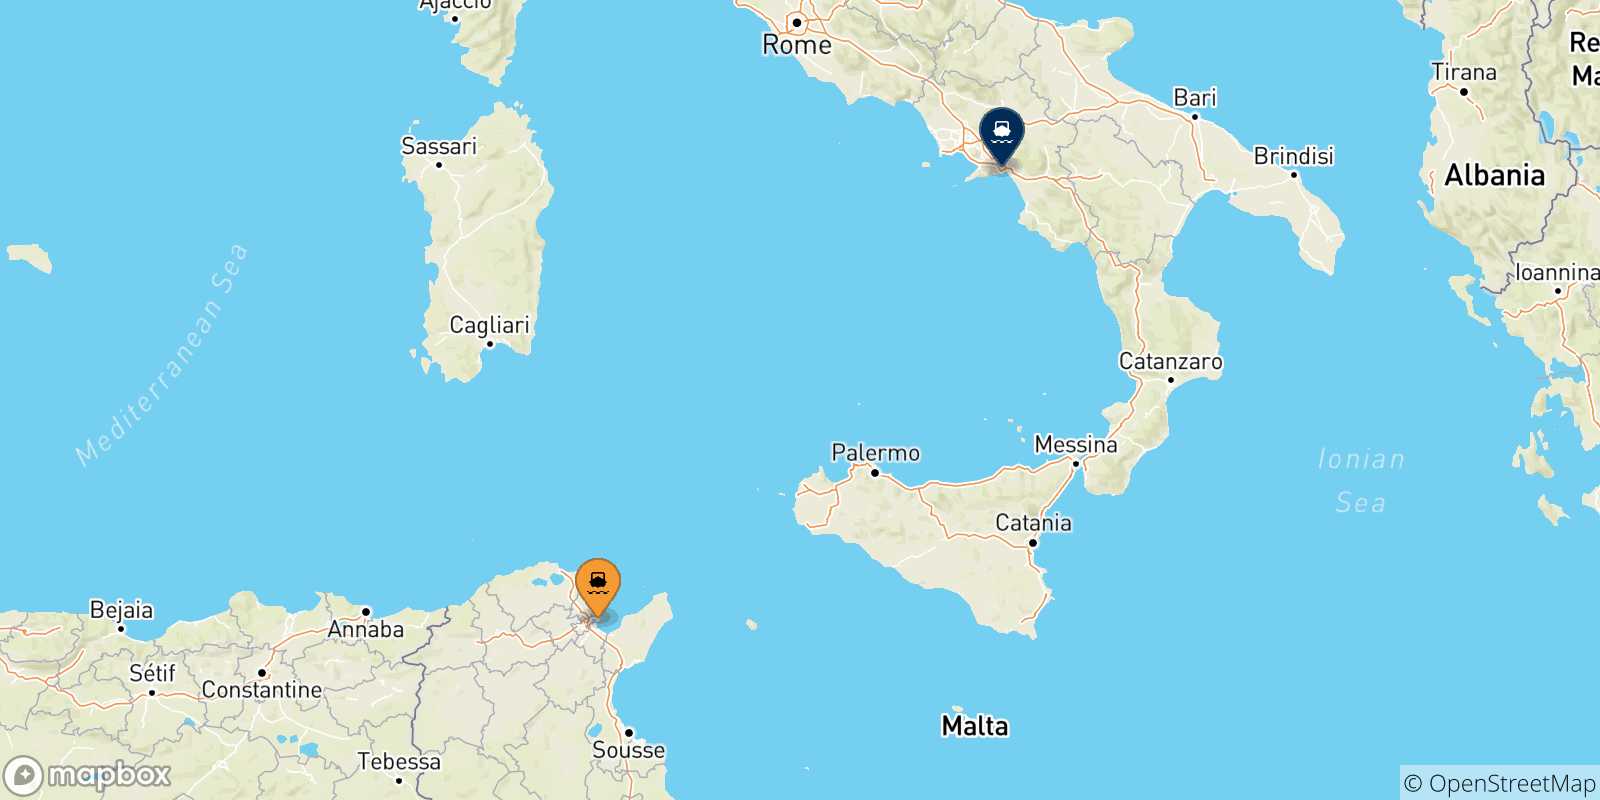 Mappa delle possibili rotte tra la Tunisia e Salerno